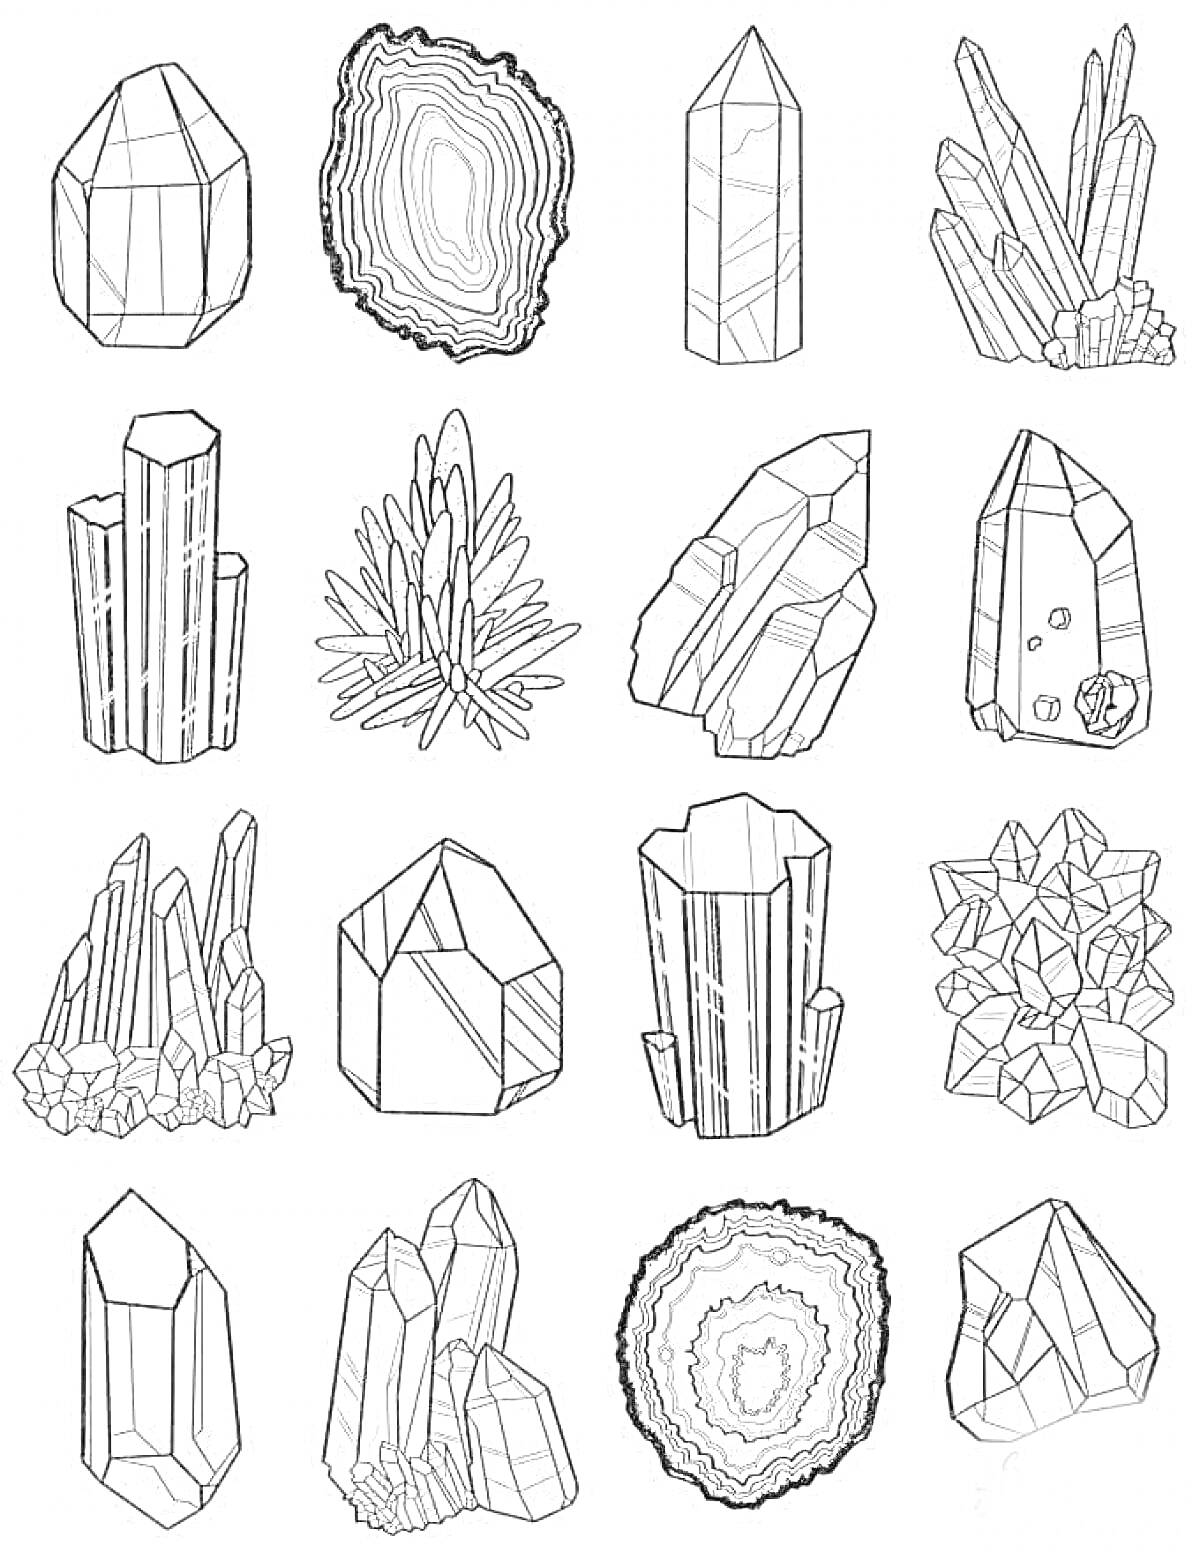 Раскраска Набор геометрических камней и кристаллов: одиночные кристаллы, кристаллические кластеры, агат с концентрическими слоями